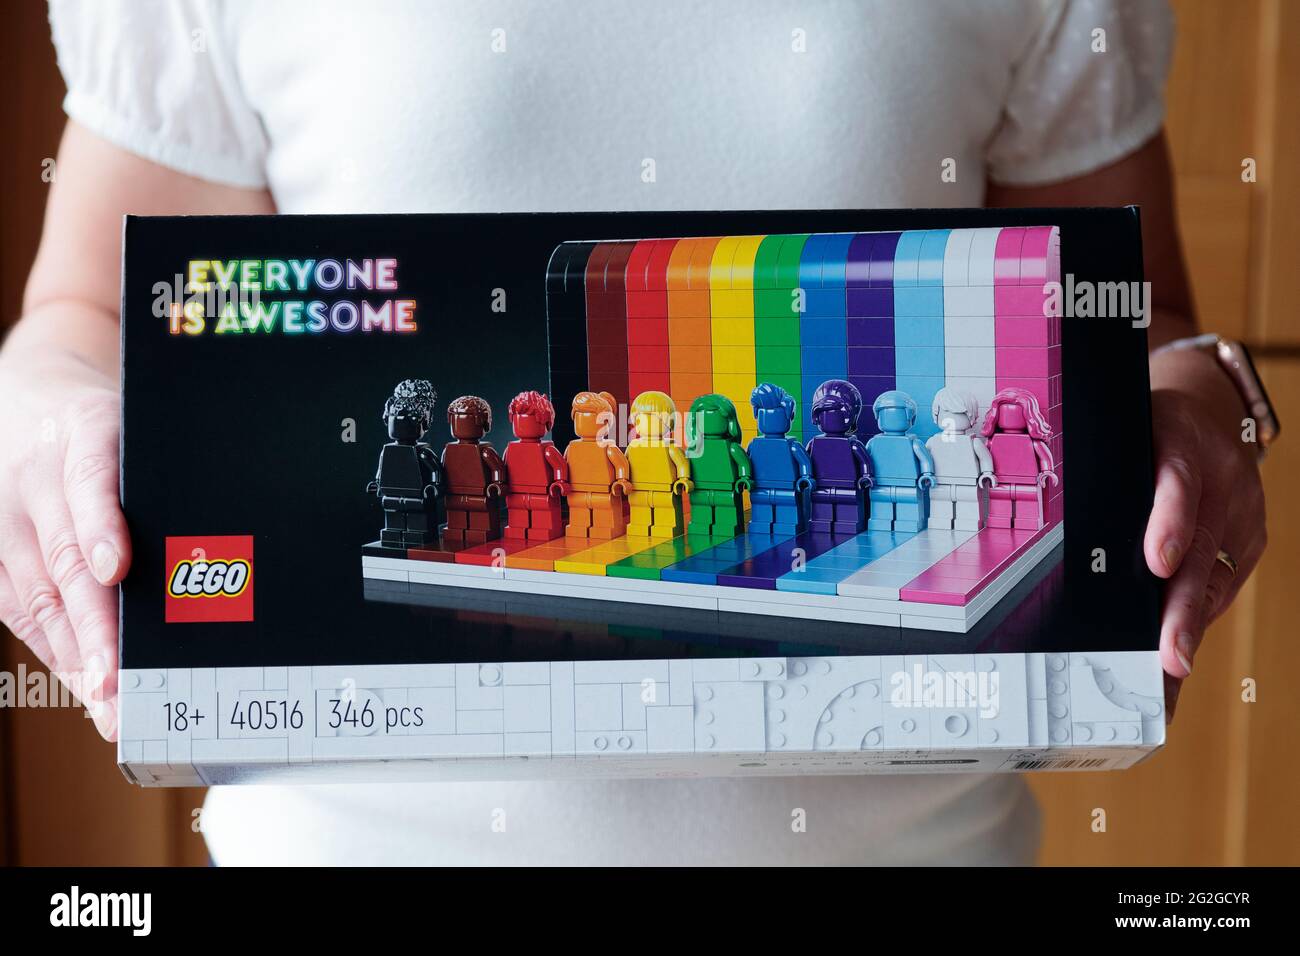 Todo el mundo es increíble, establecido por Lego. Un nuevo y colorido conjunto que celebra la diversidad, la positividad y la amabilidad con once figuras y una pared de ladrillo de color Foto de stock